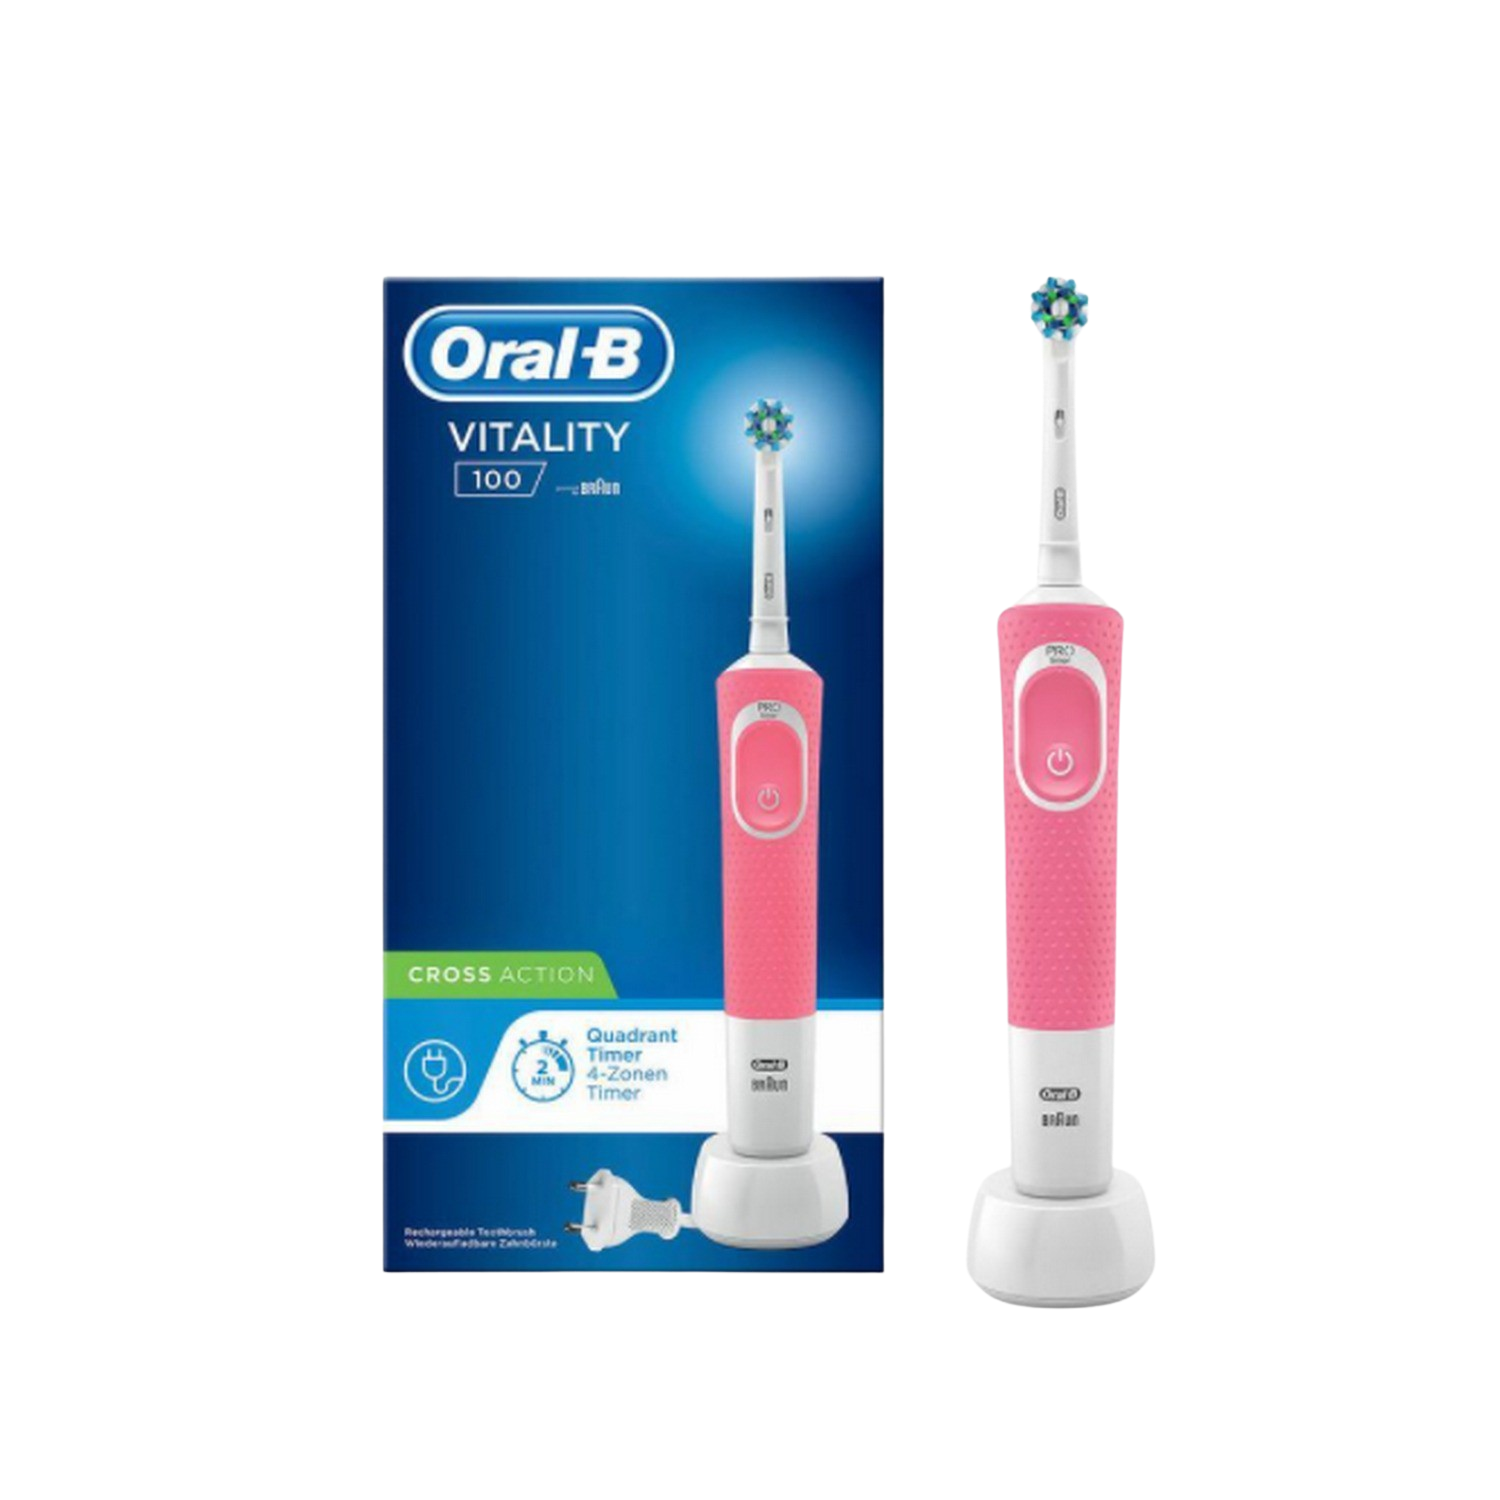 Cepillo Dientes Braun vitality 100 crossaction rosa oralb con mango recargable tecnología y 1 cabezal recambio action dental d100 temporizador timer